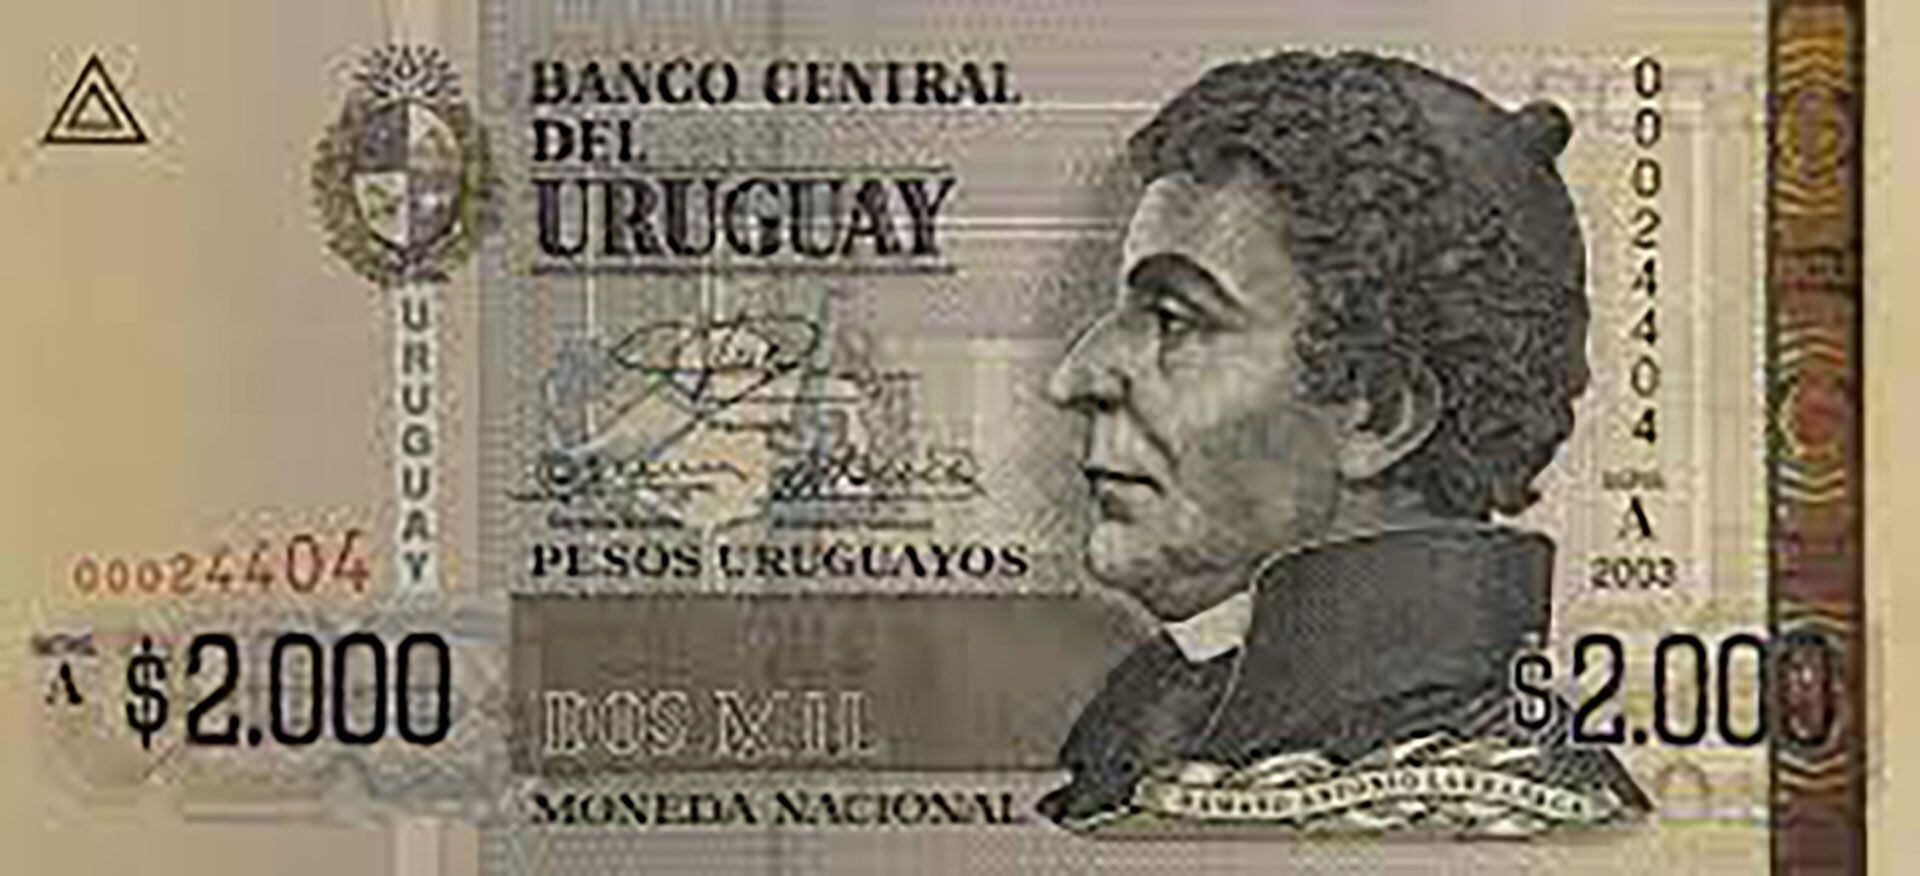 Dámaso de Larrañaga aparece actualmente en el billete de $2000 uruguayos y es considerado un prócer. Fue el capellán del ejército reconquistador de Buenos Aires en 1806.